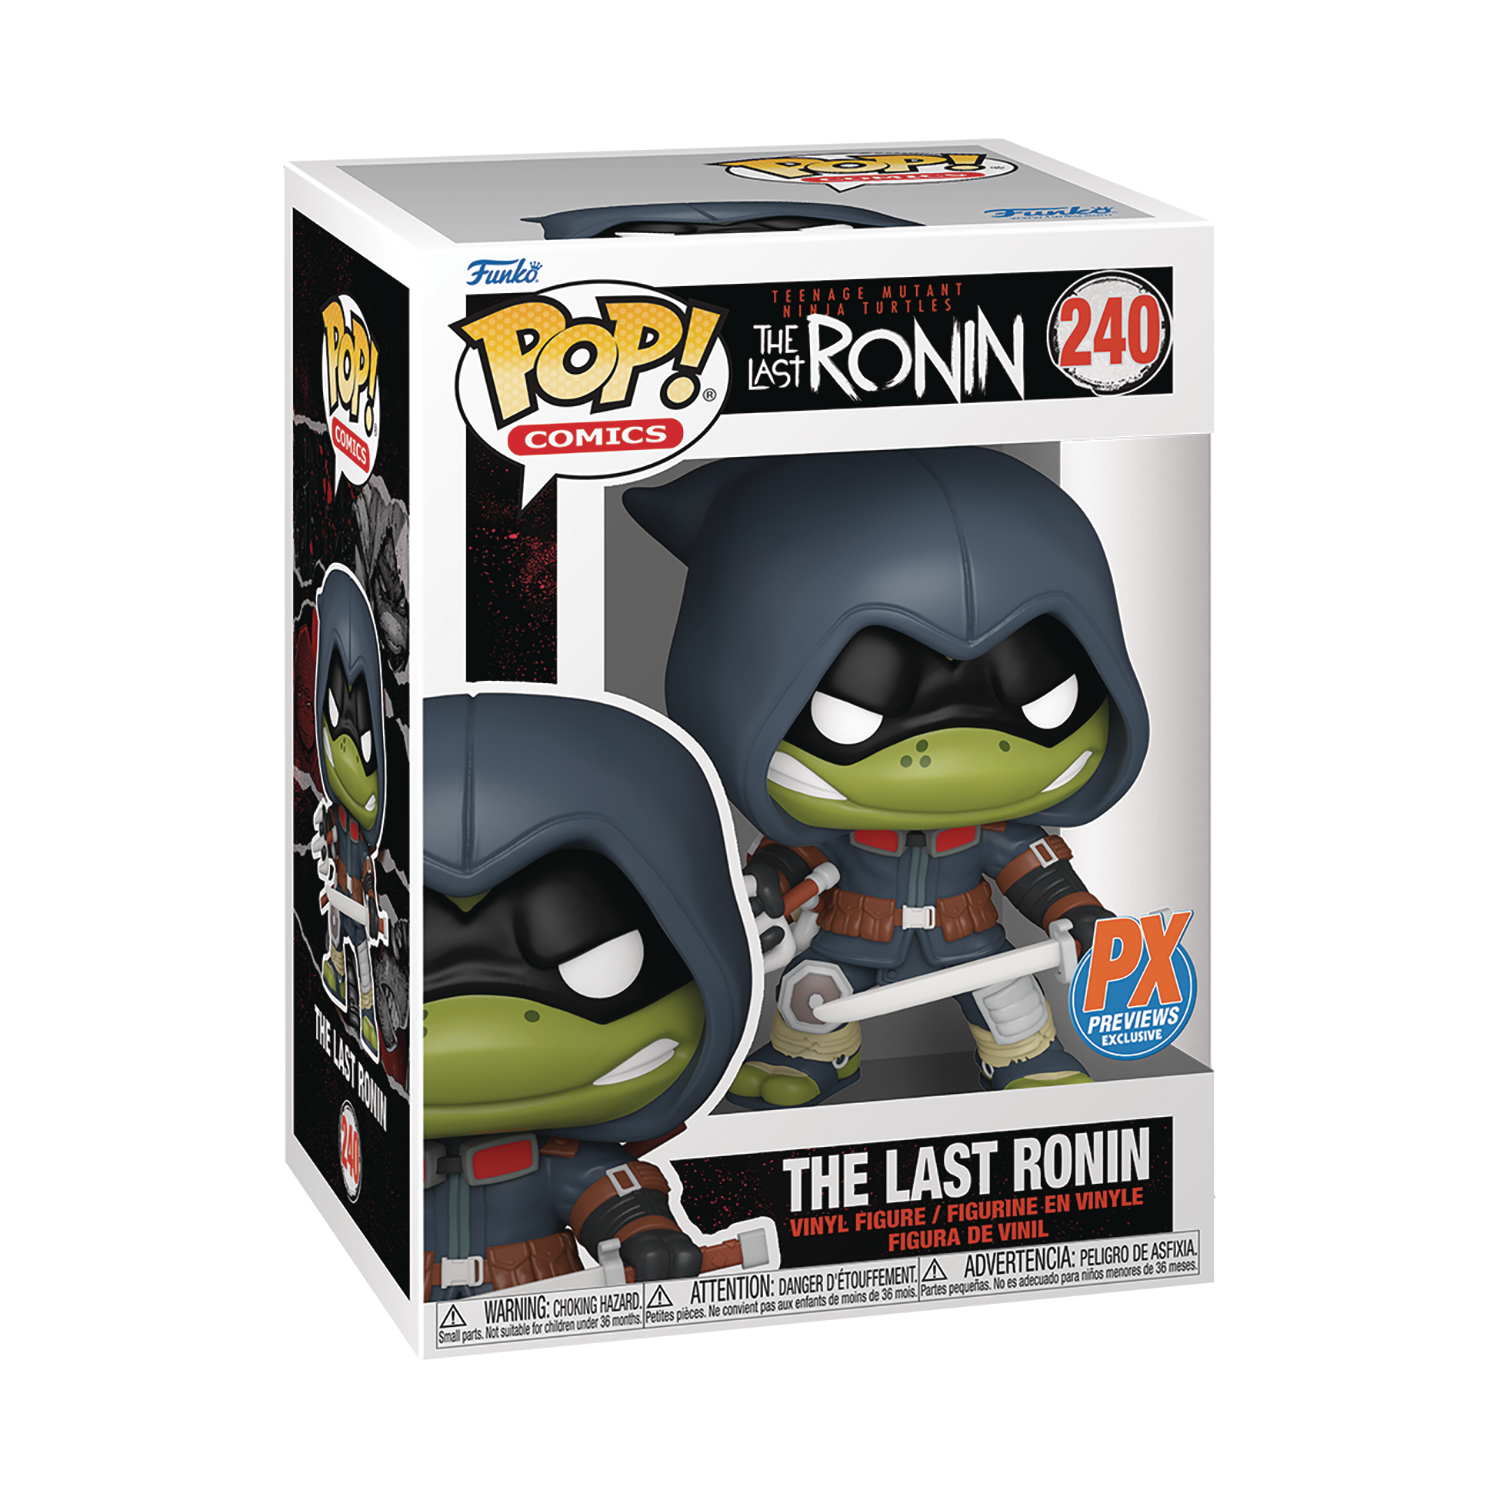 Pop! Comics Teenage Mutant Ninja Turtles The Last Ronin Px Vinyl Figure